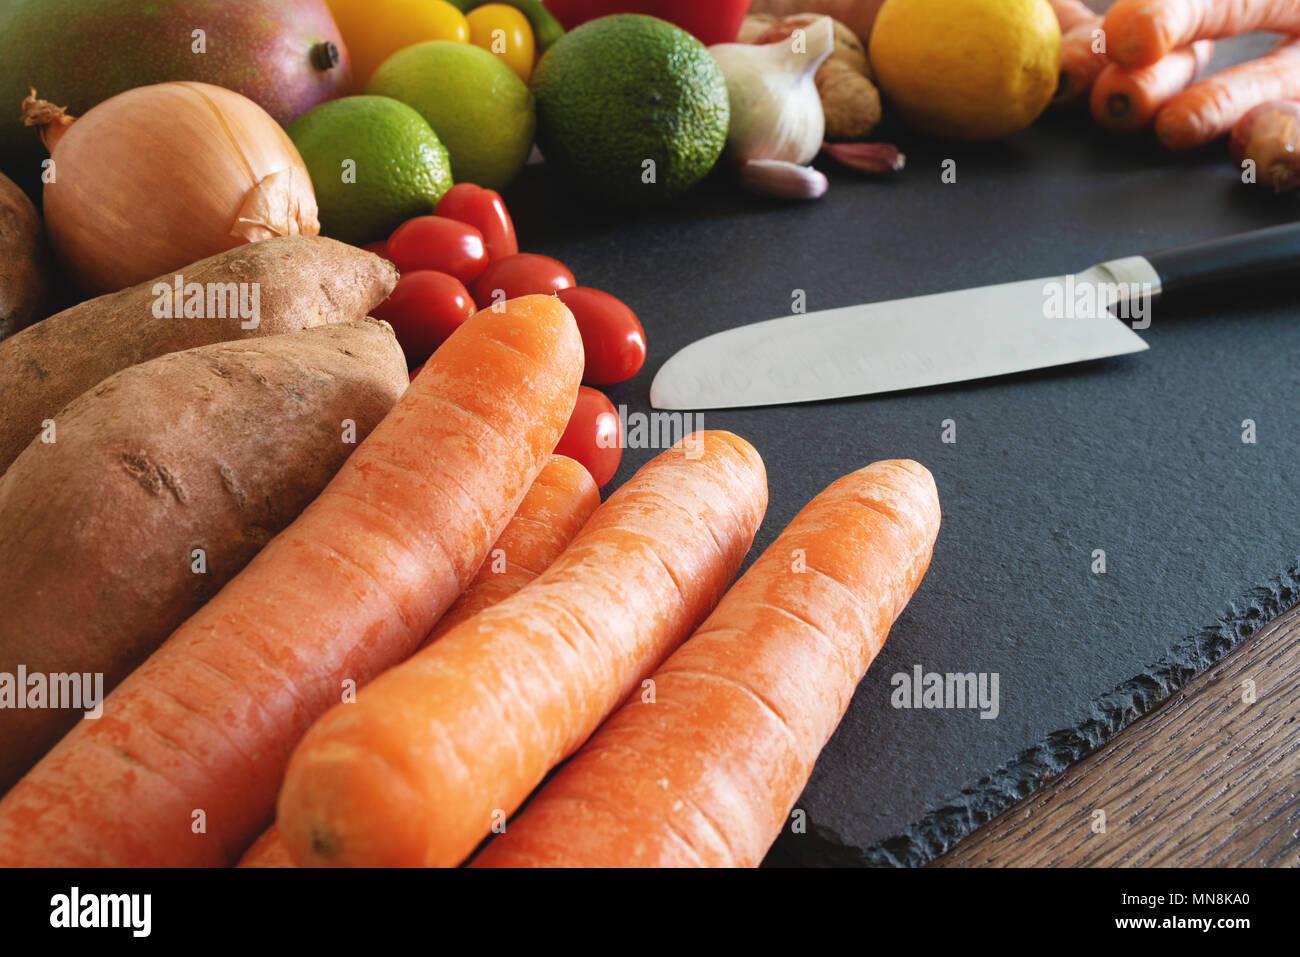 Frutas y hortalizas orgánicas frescas sobre pizarra tabla de cortar con cuchillo de cocina Foto de stock